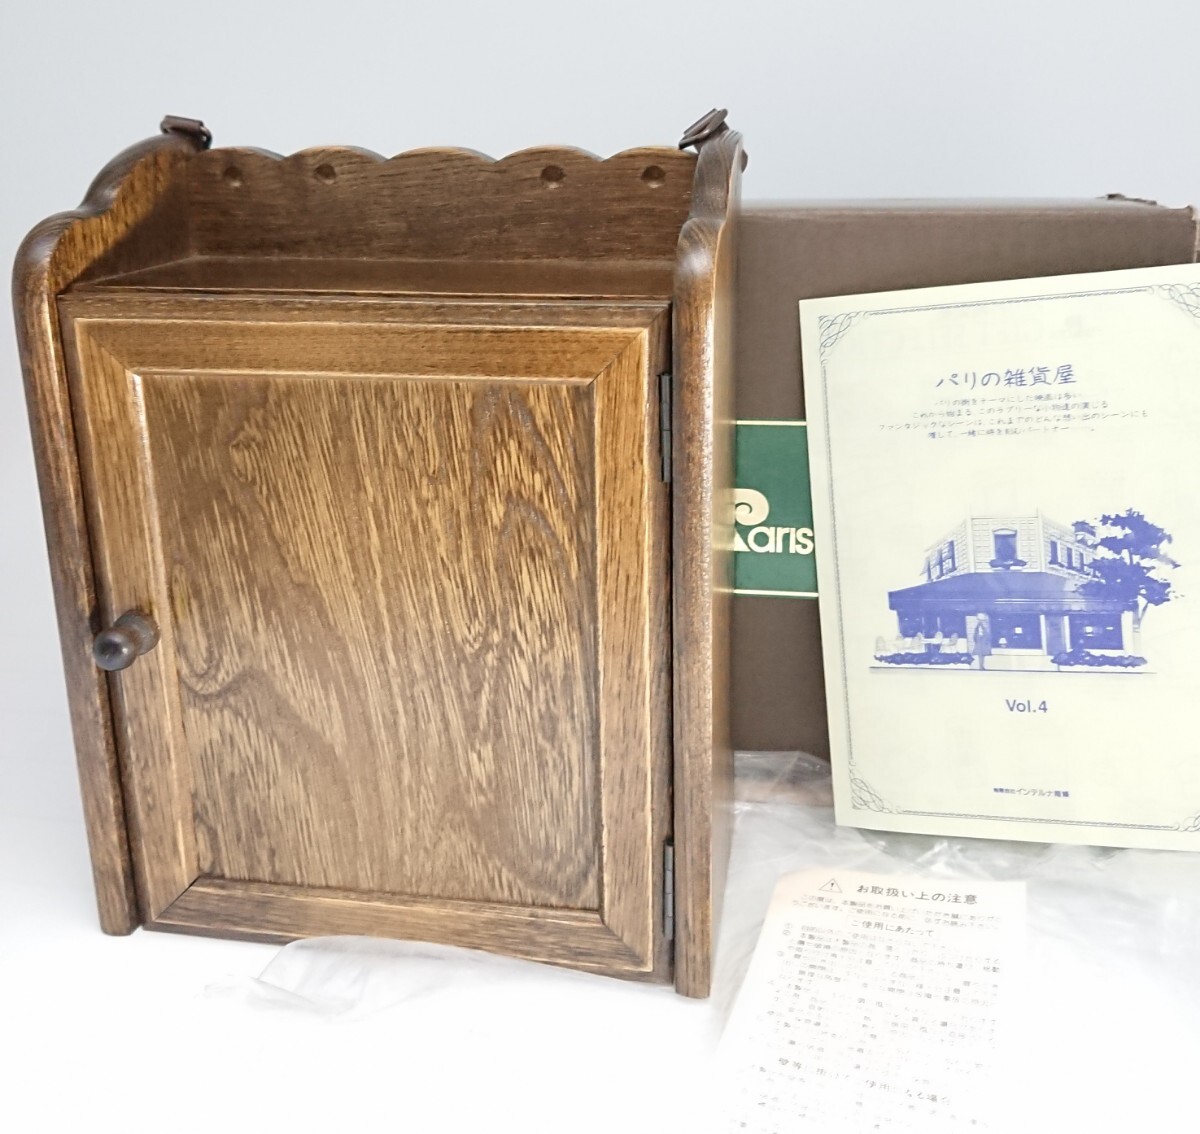 1284【 美品】パリの雑貨屋 キーボックス FG-204 インテルナ南條 木製品の画像1